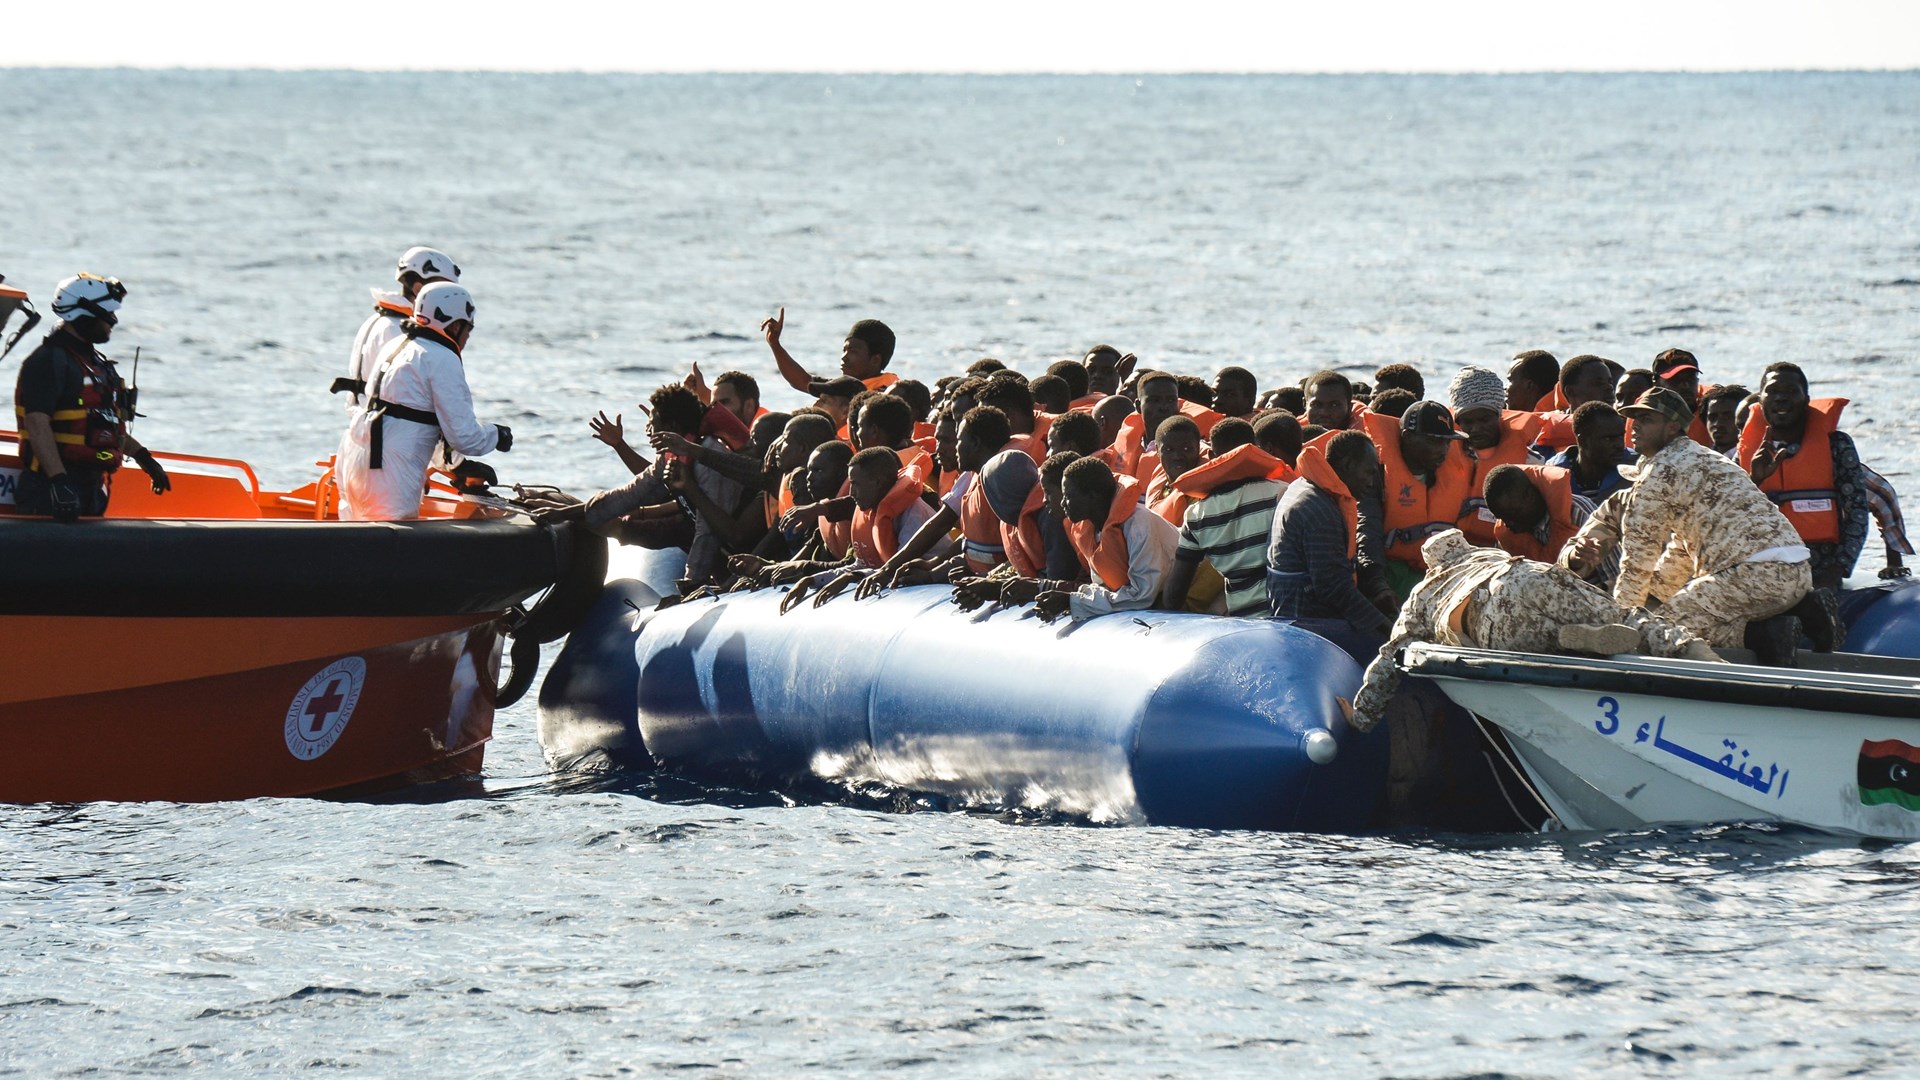 Η ακτοφυλακή της Λιβύης αναχαίτισε εκατοντάδες μετανάστες που ξεκινούσαν για την Ευρώπη